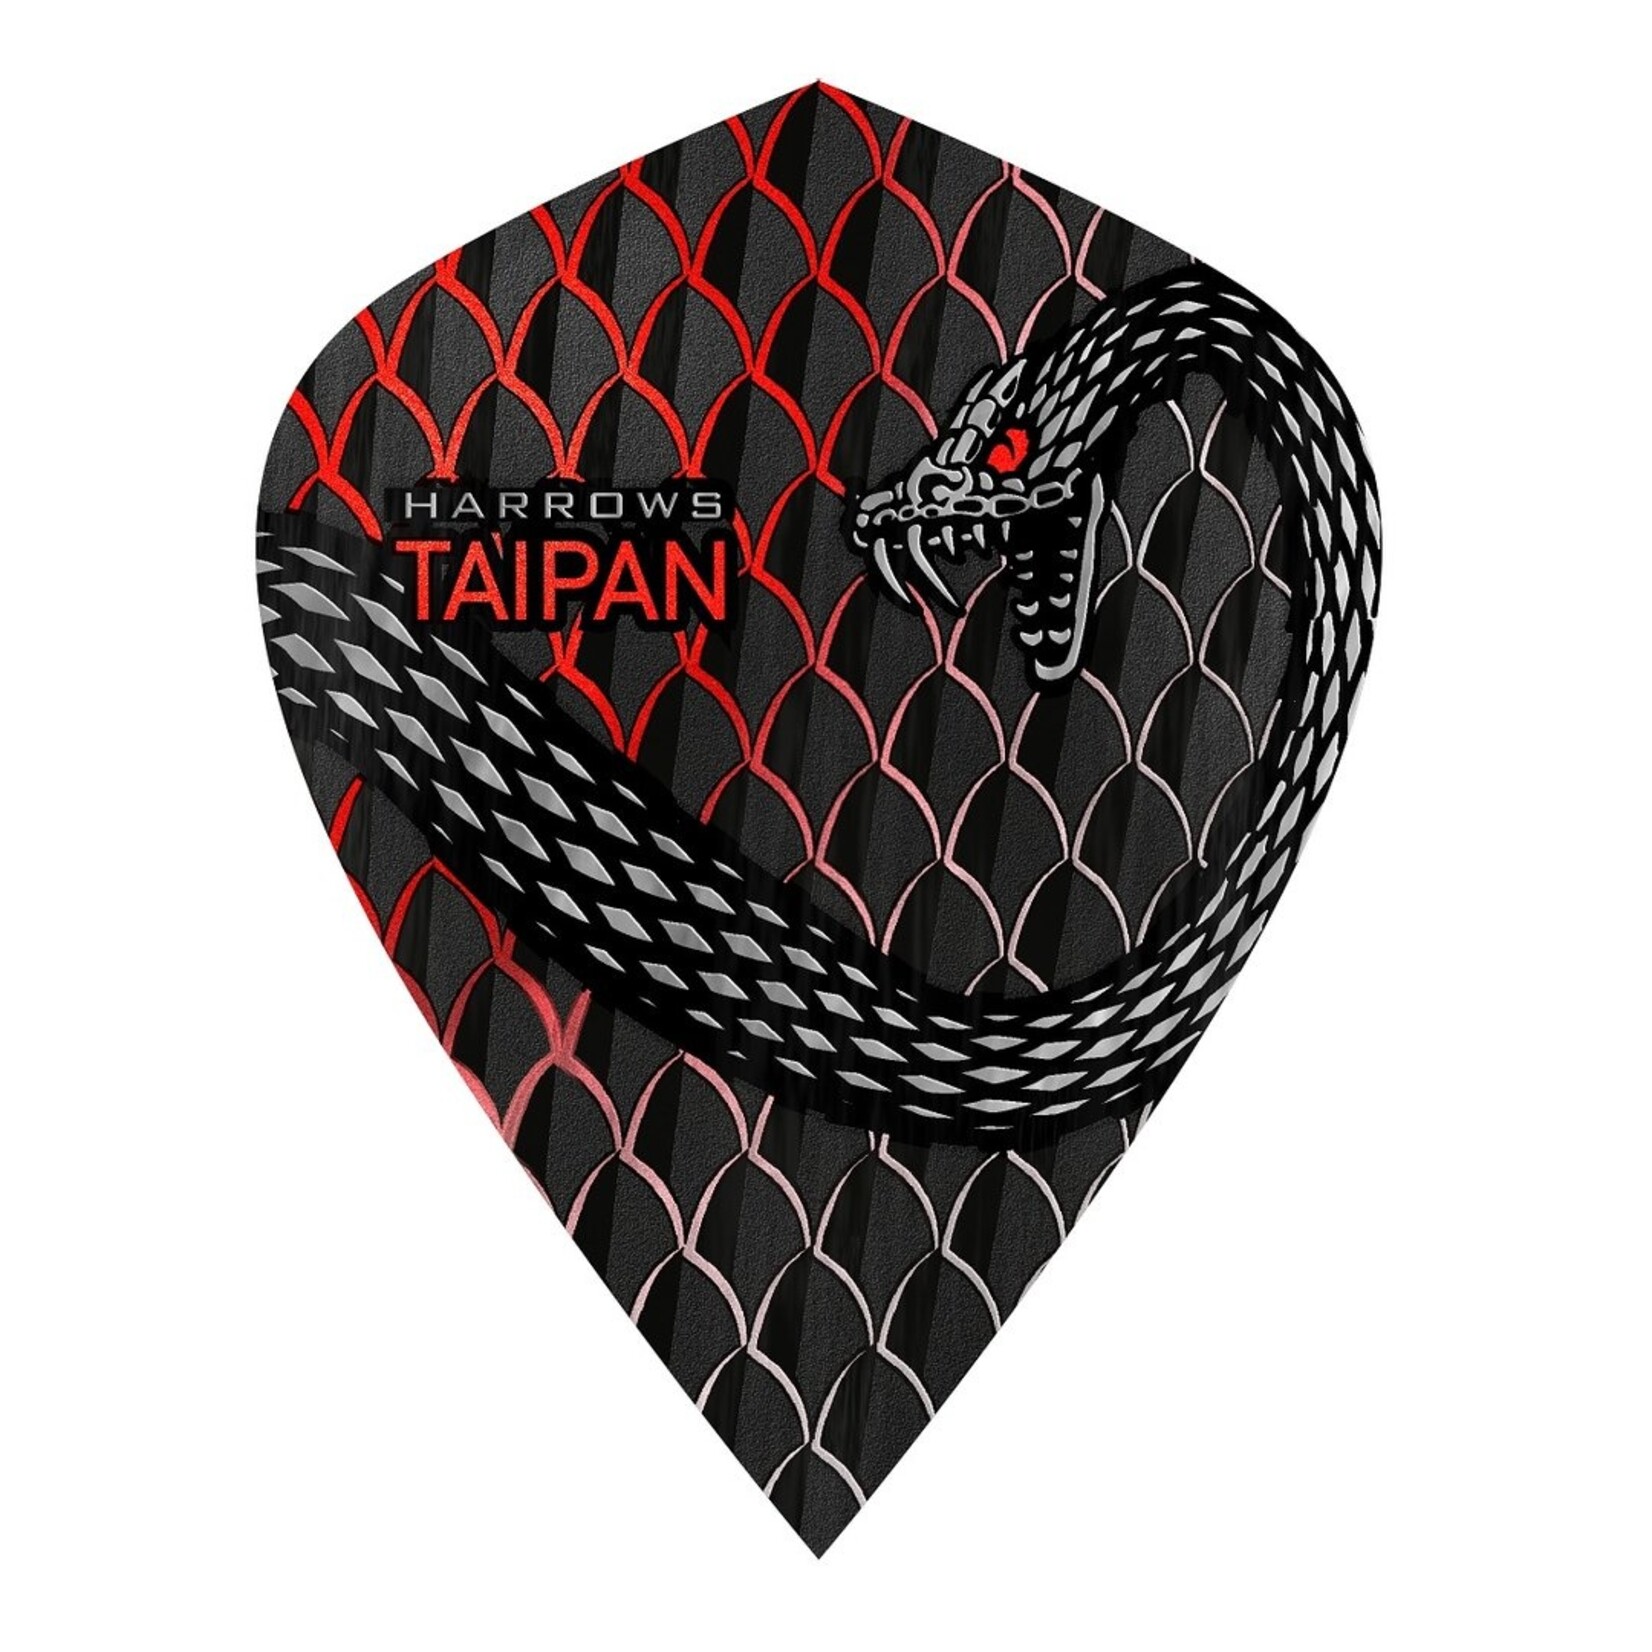 Harrows Darts Harrows Taipan Kite Dart Flights